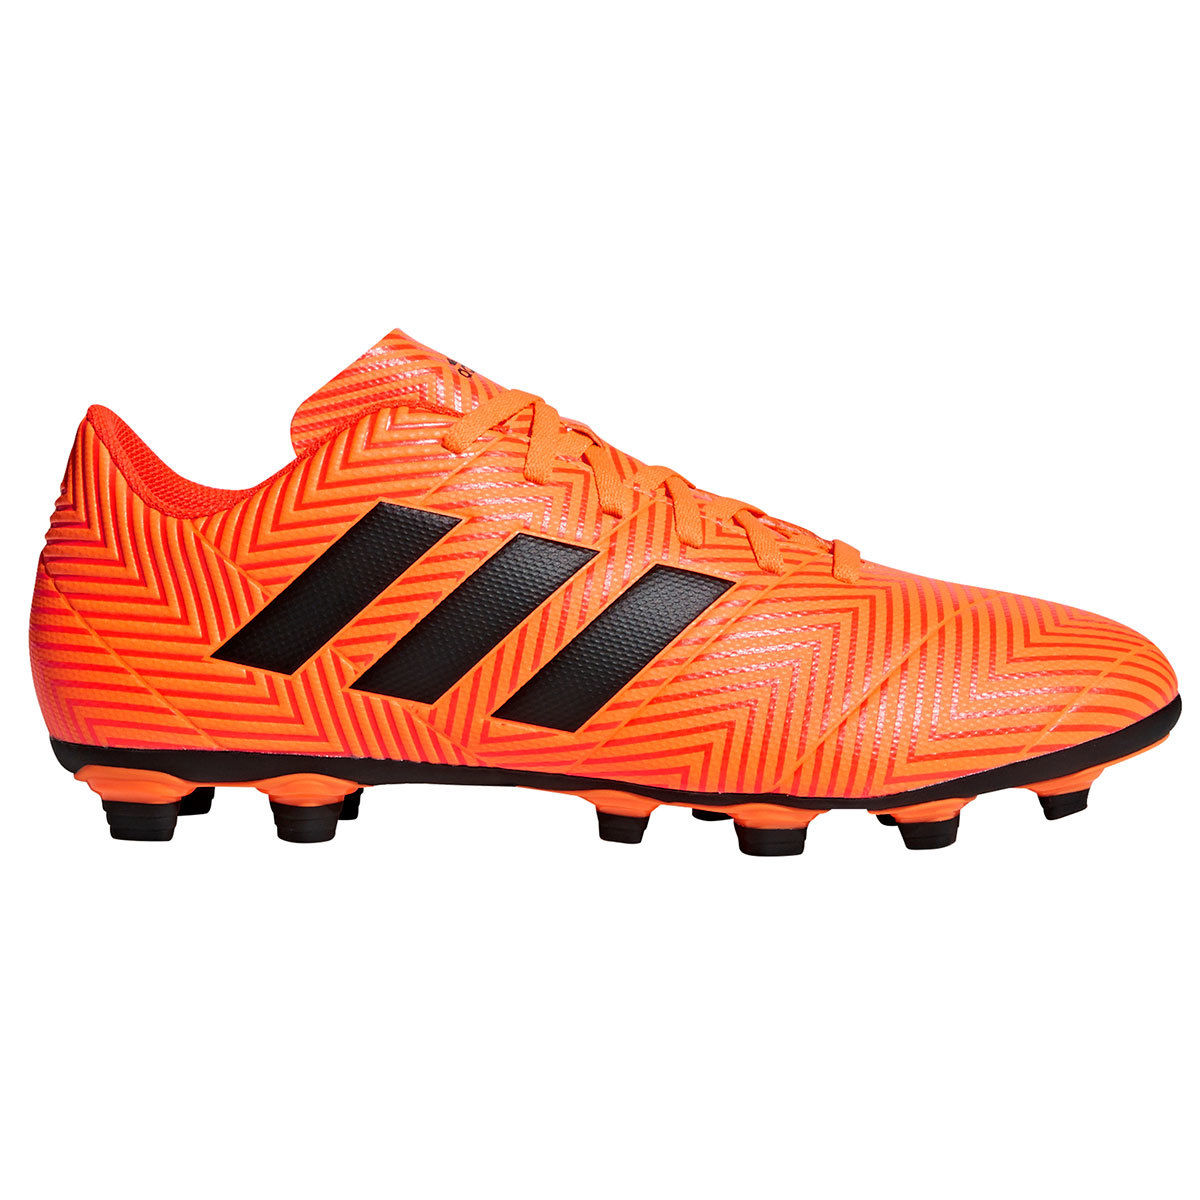 Adidas Men's Nemeziz 18.4 Flexible Ground Soccer Cleats - Orange, 9.5